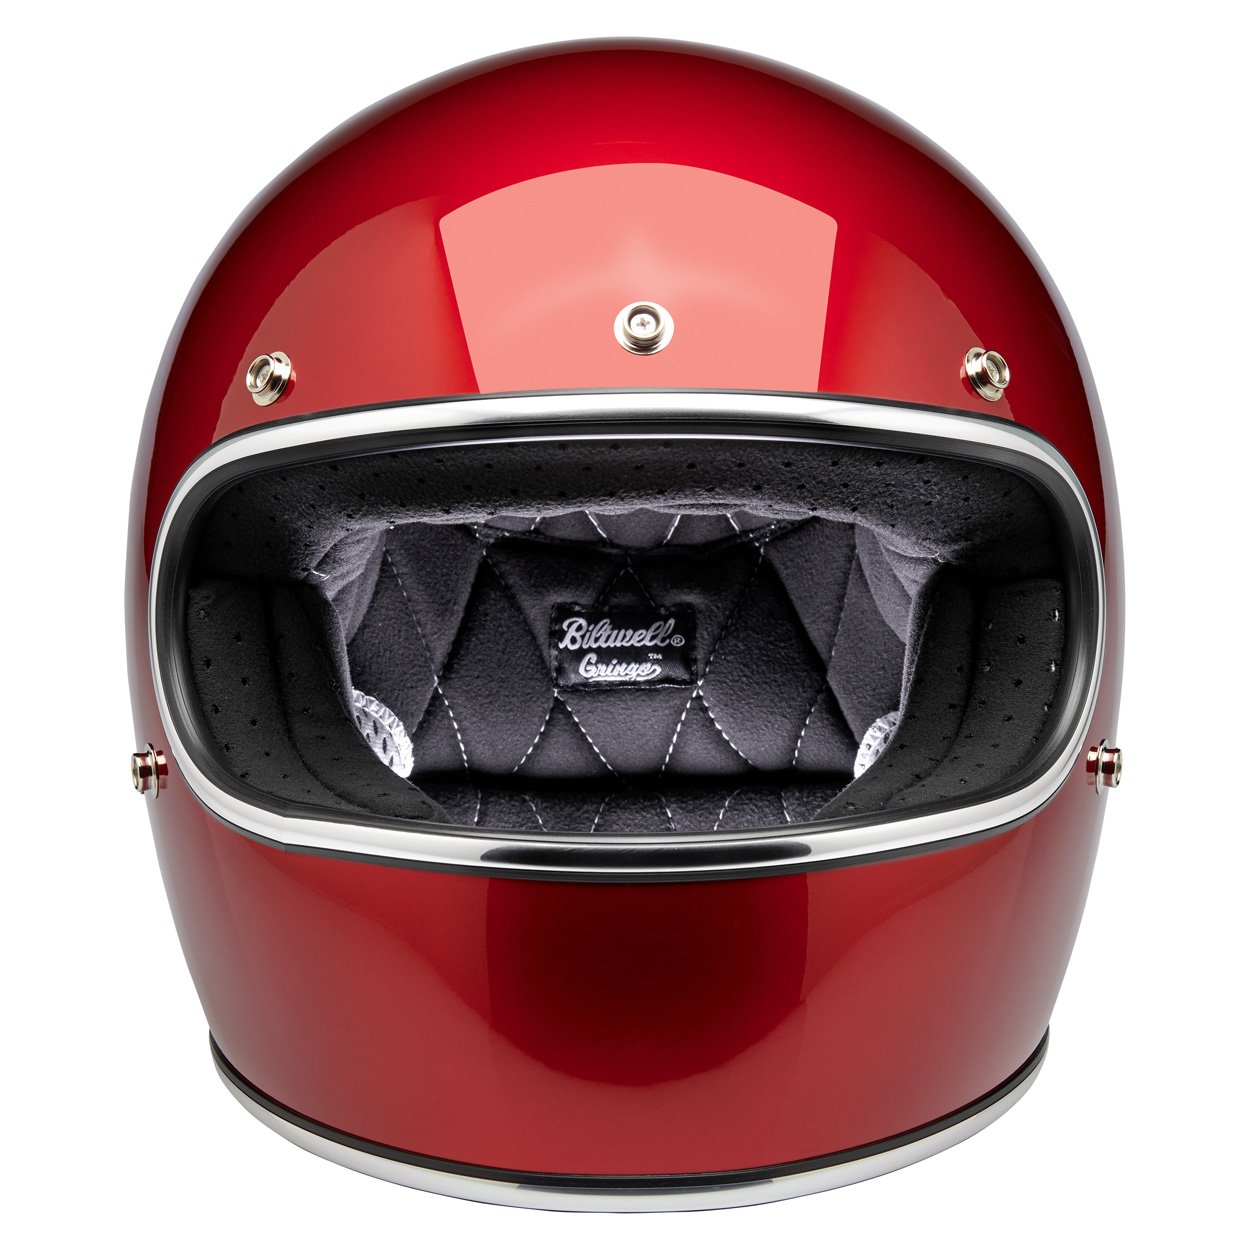 Biltwell Gringo Helmet - Cherry Red